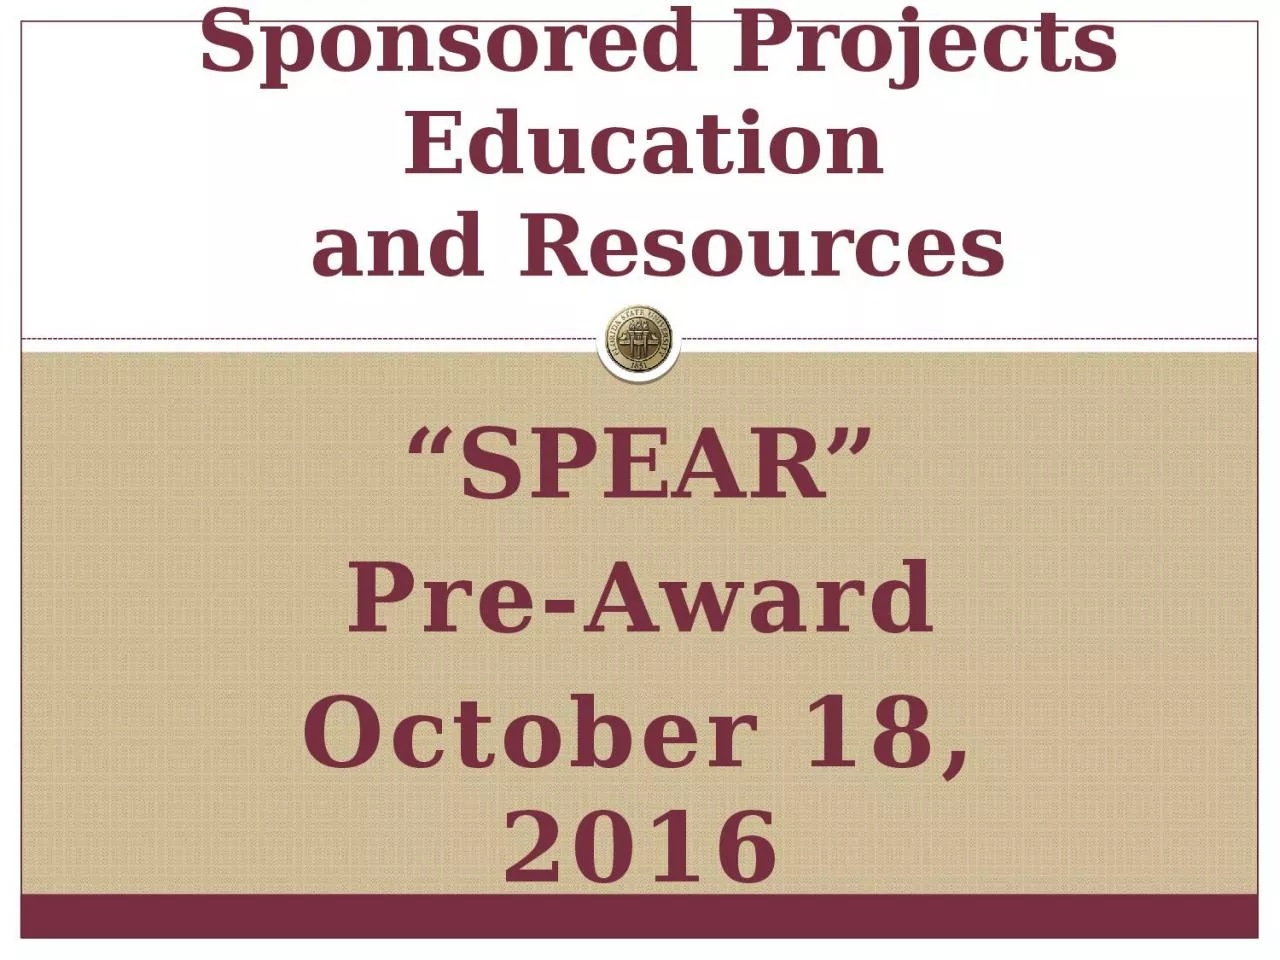 “SPEAR” Pre-Award October 18, 2016